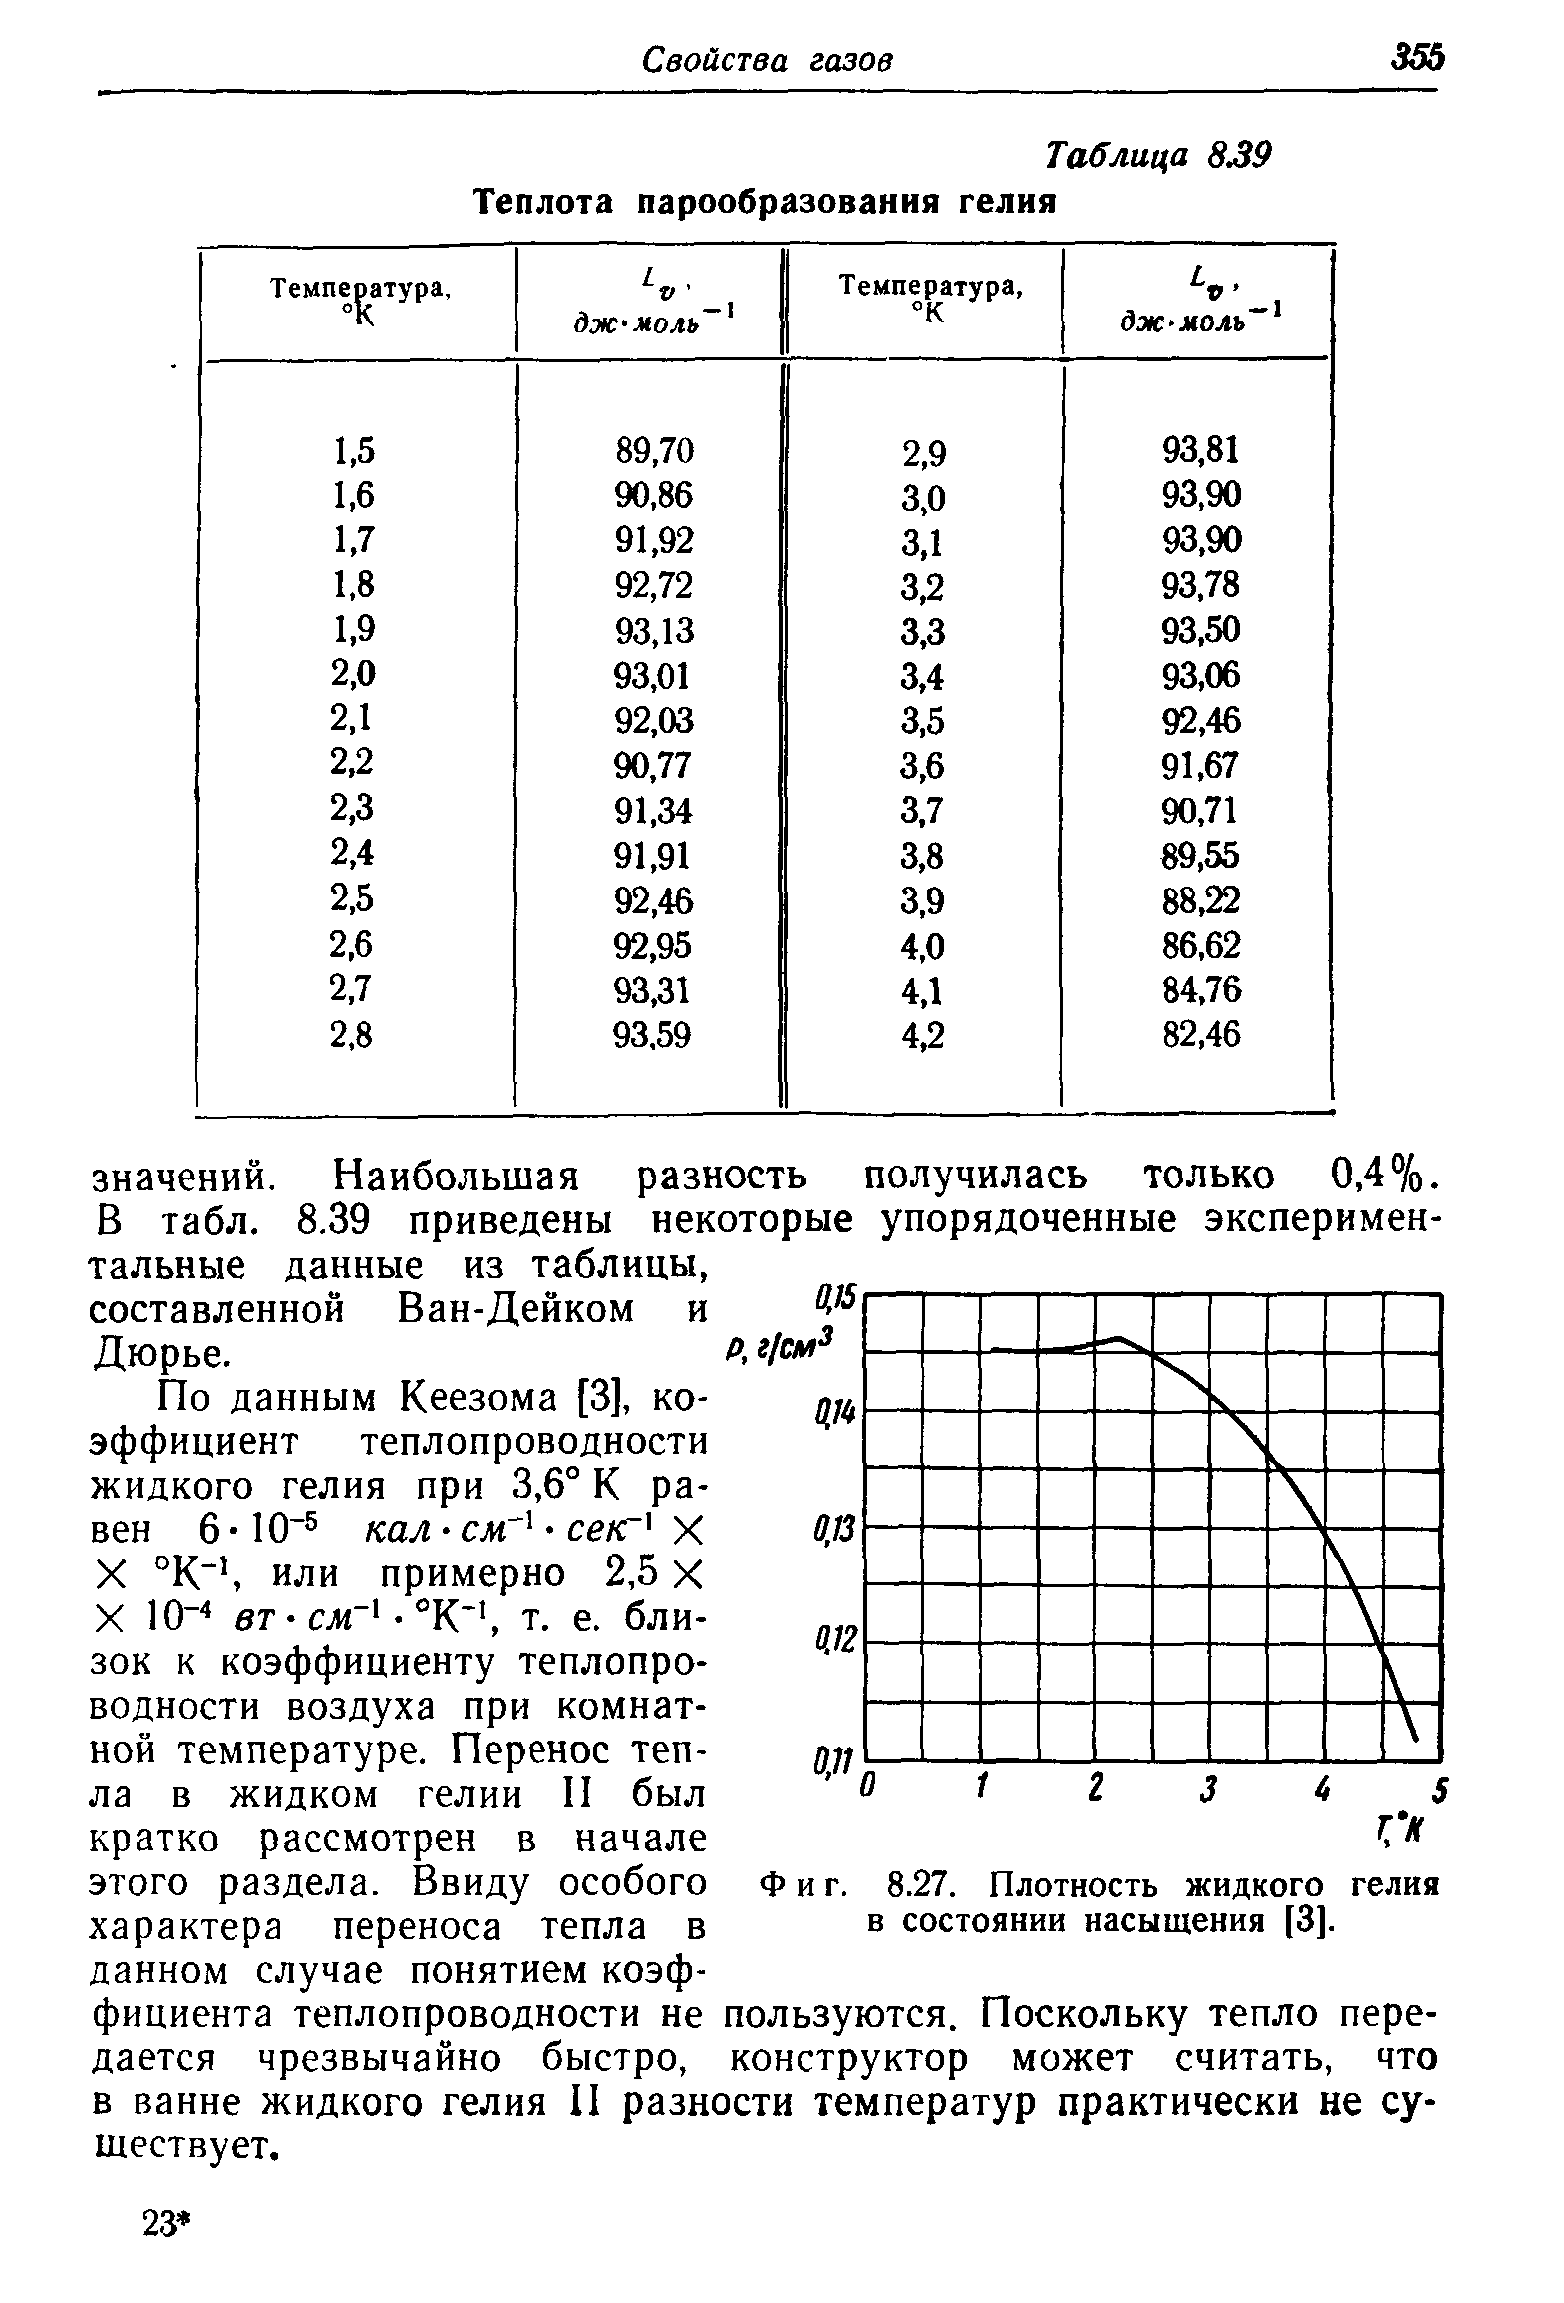 Плотность гелия от температуры таблица. Расширение гелия при температуре